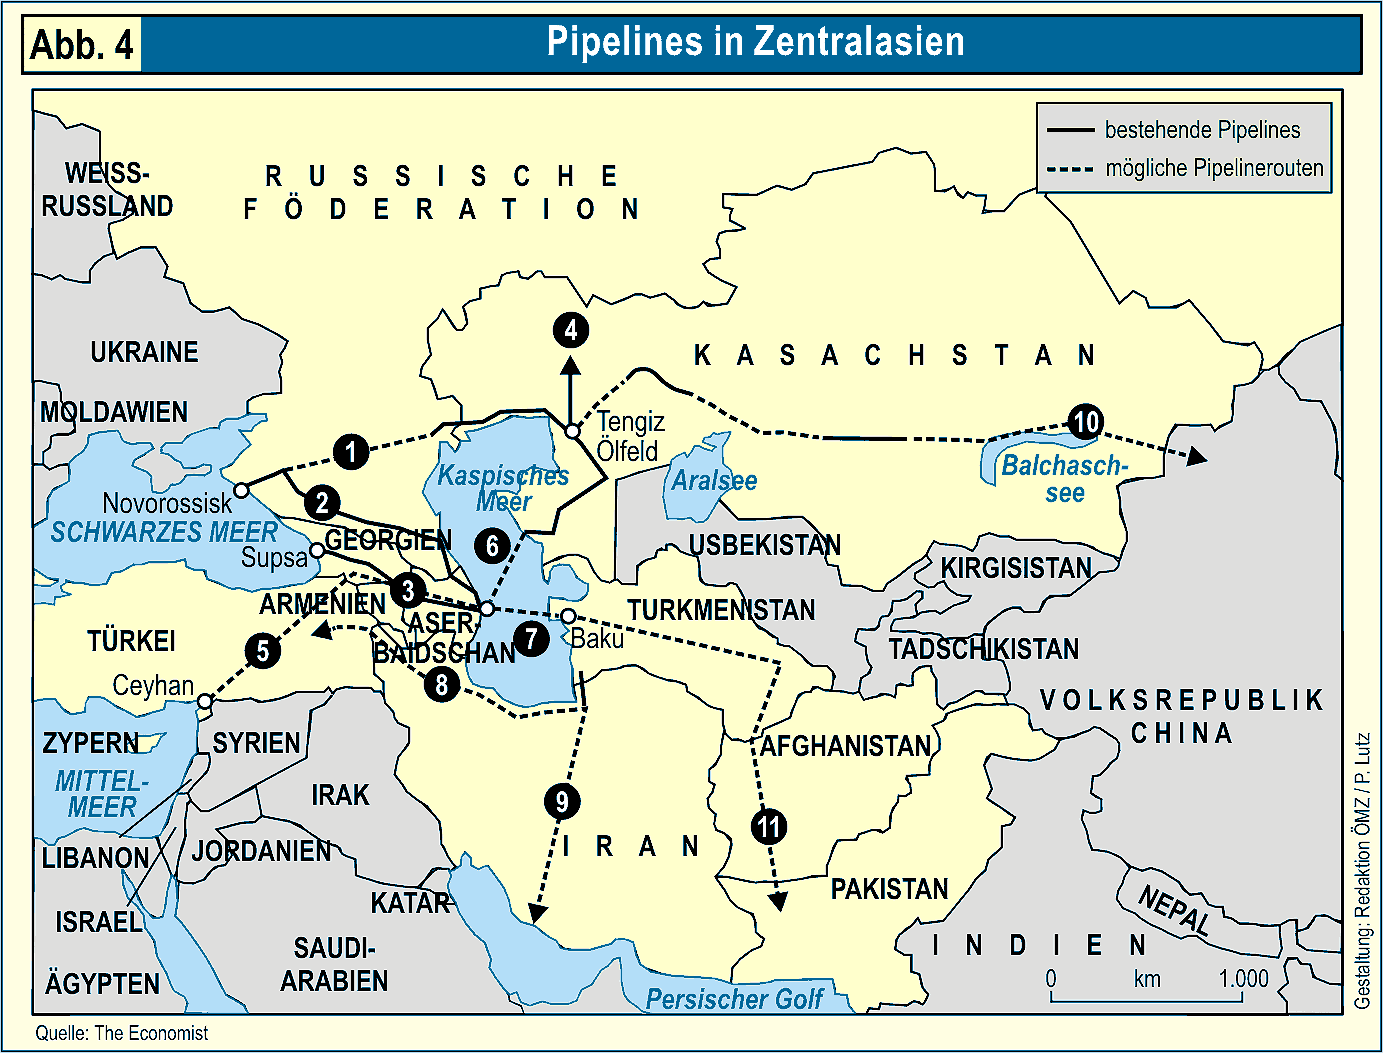 Pipelines in Zentralasien.